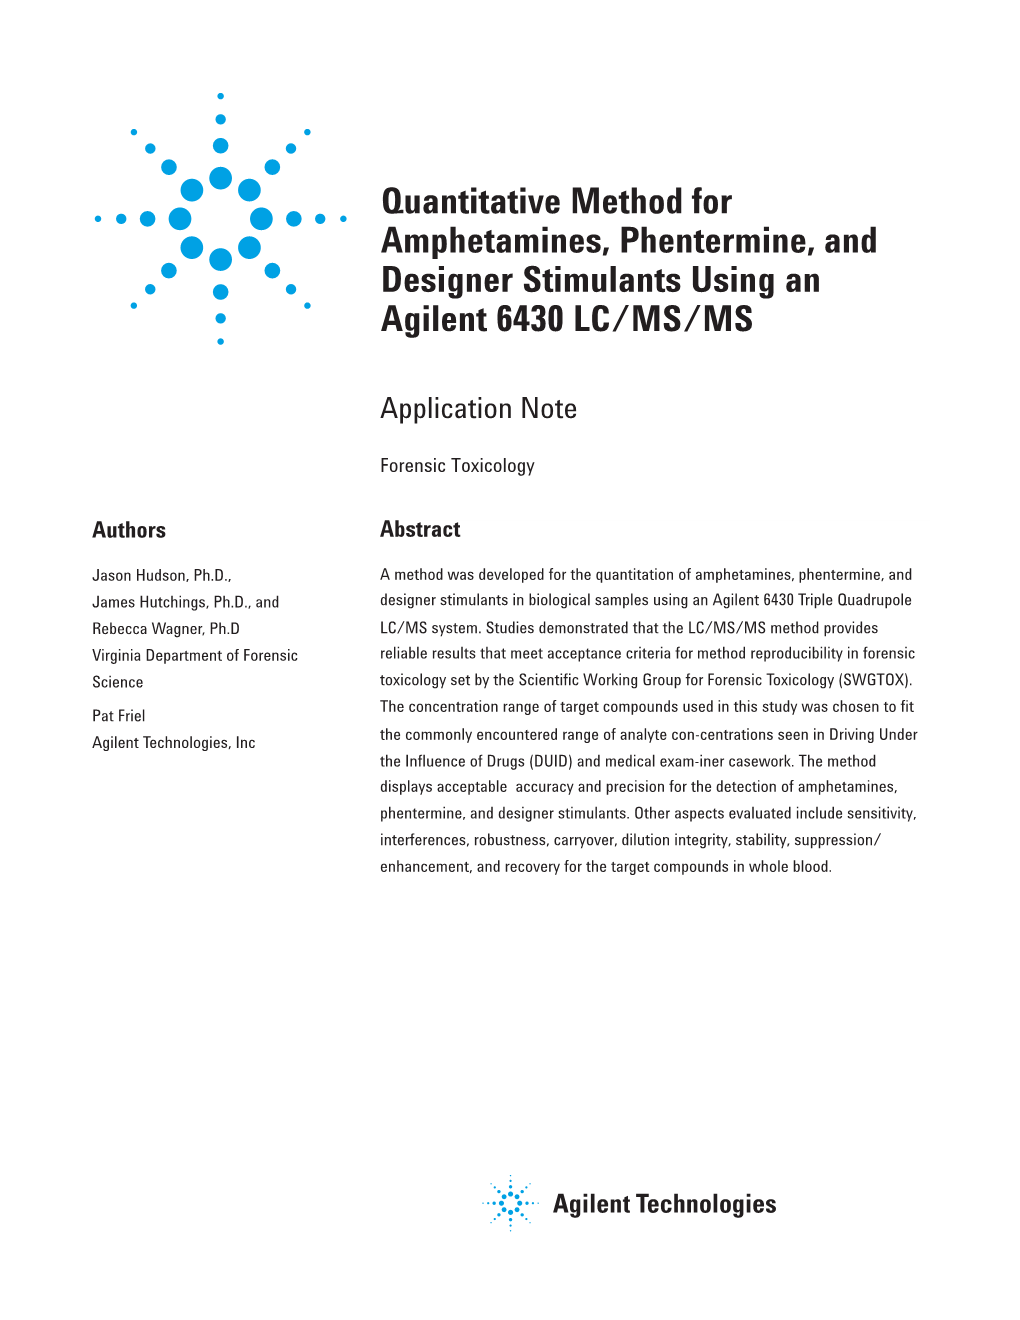 Quantitative Method for Amphetamines, Phentermine, and Designer Stimulants Using an Agilent 6430 LC/MS/MS